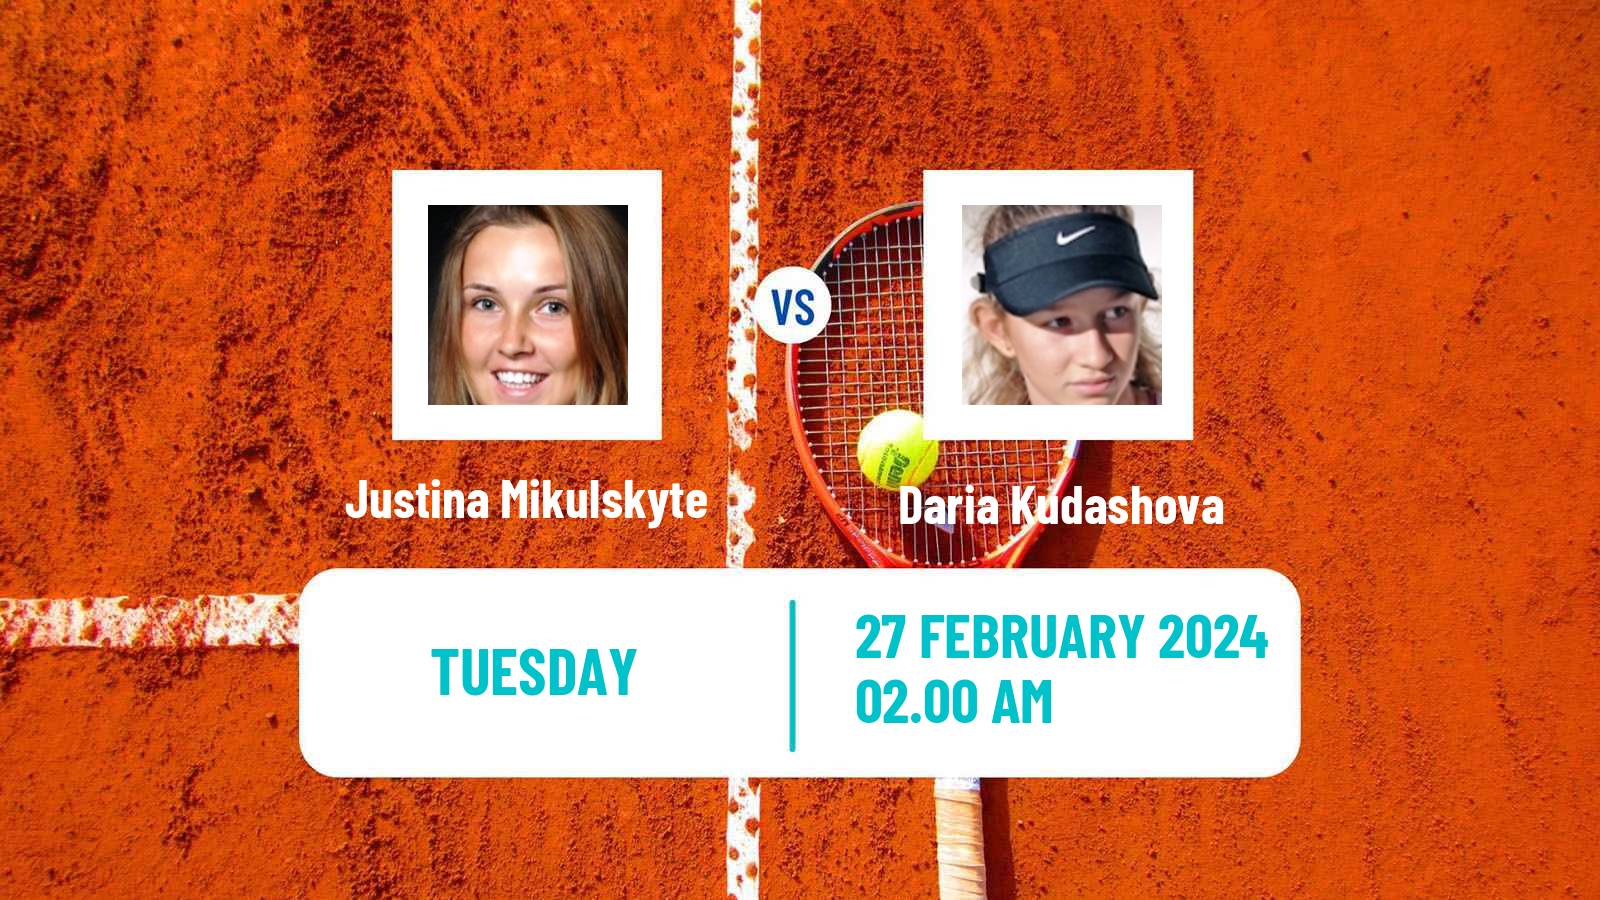 Tennis ITF W35 Gurugram Women Justina Mikulskyte - Daria Kudashova